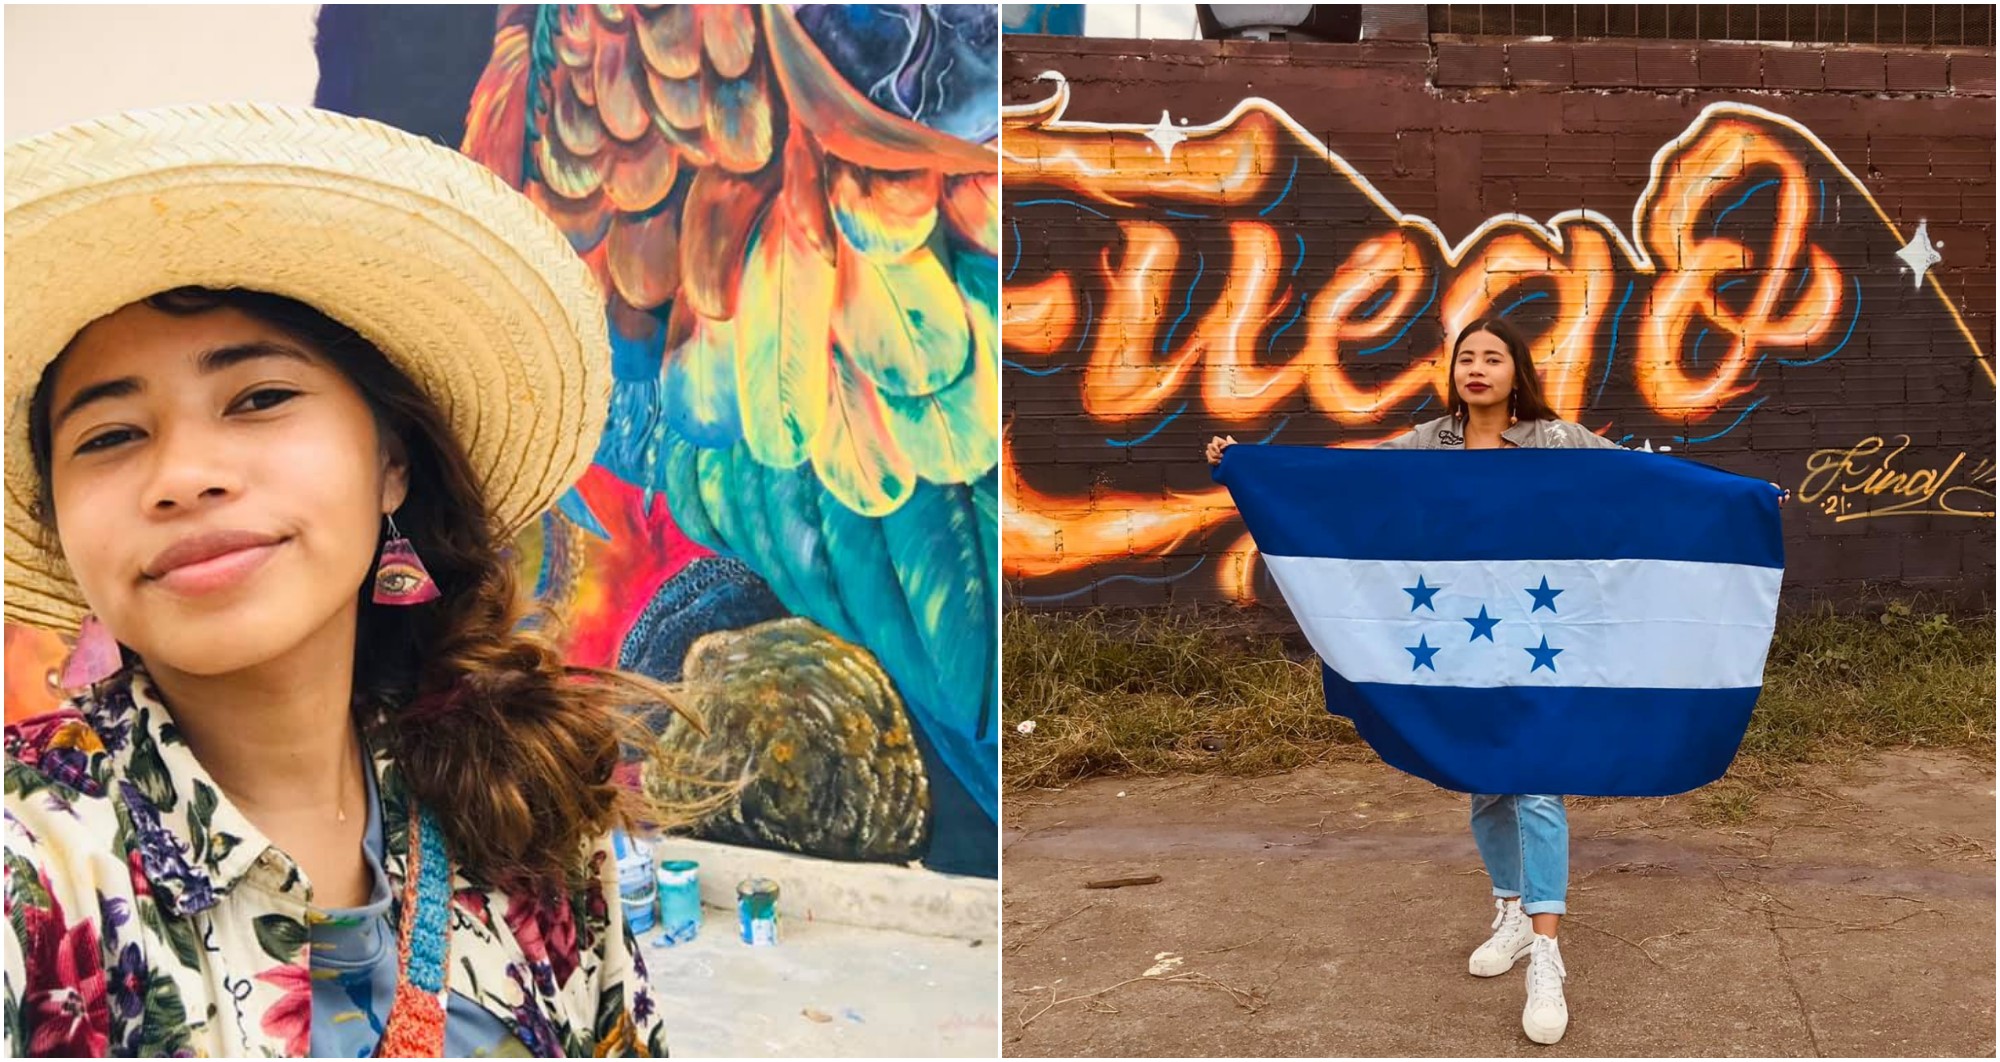 Hondureña participa en encuentro internacional de muralismo en Colombia